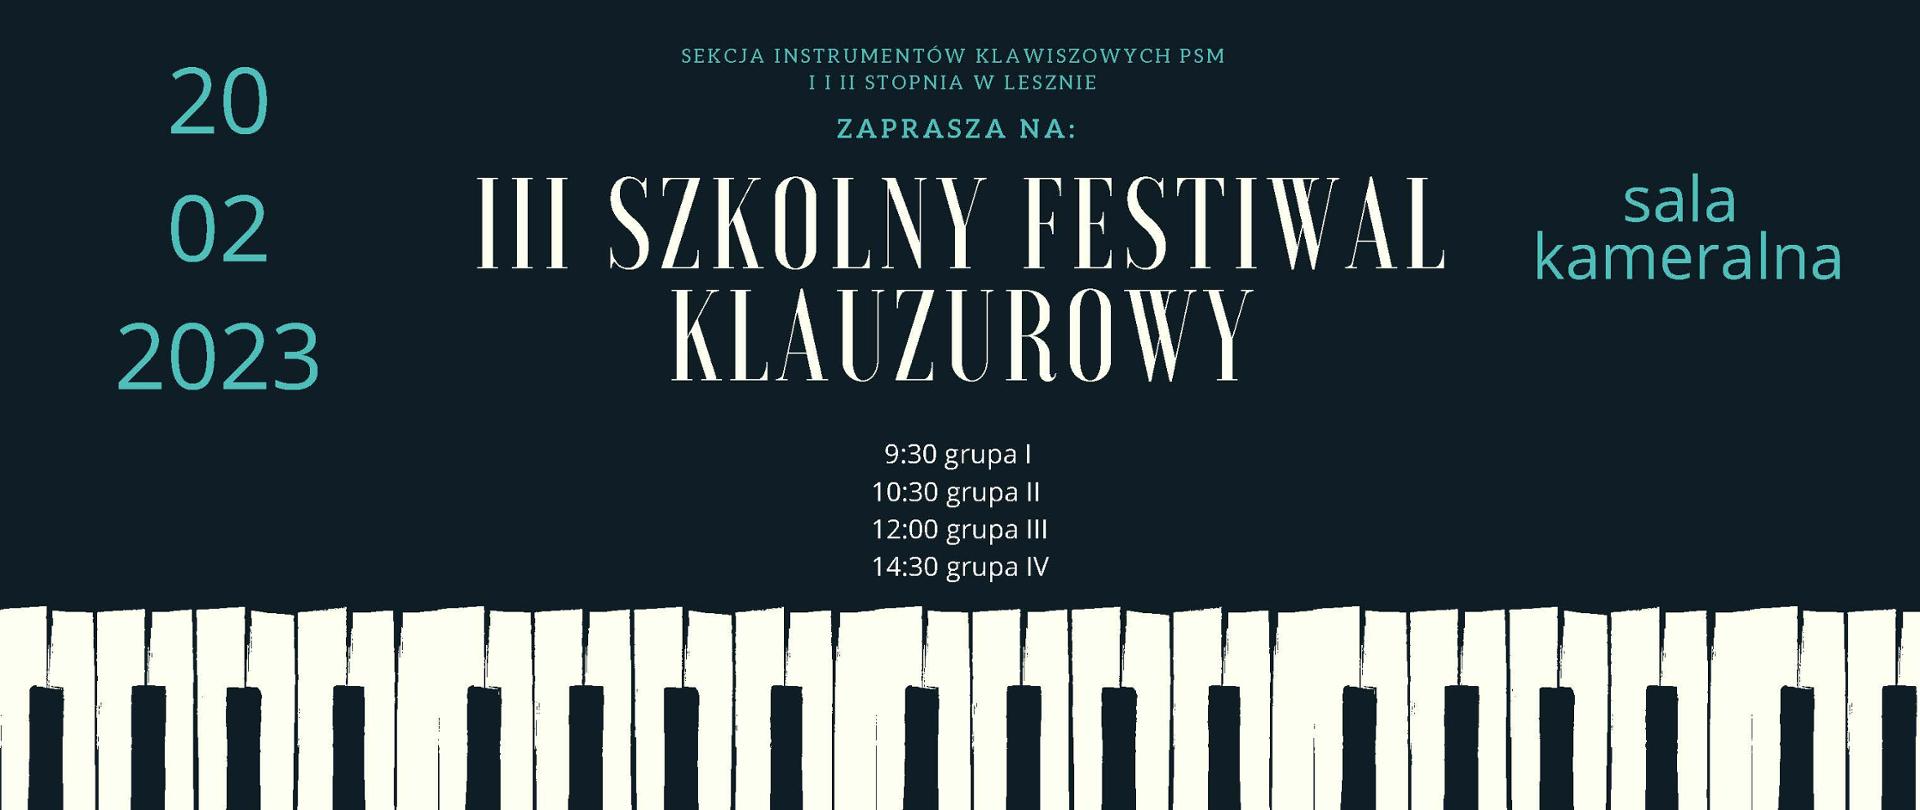 Plakat z białym napisem III Szkolny Festiwal Klauzurowy i informacjami na ciemnym tle, u dołu klawiatura fortepianowa.